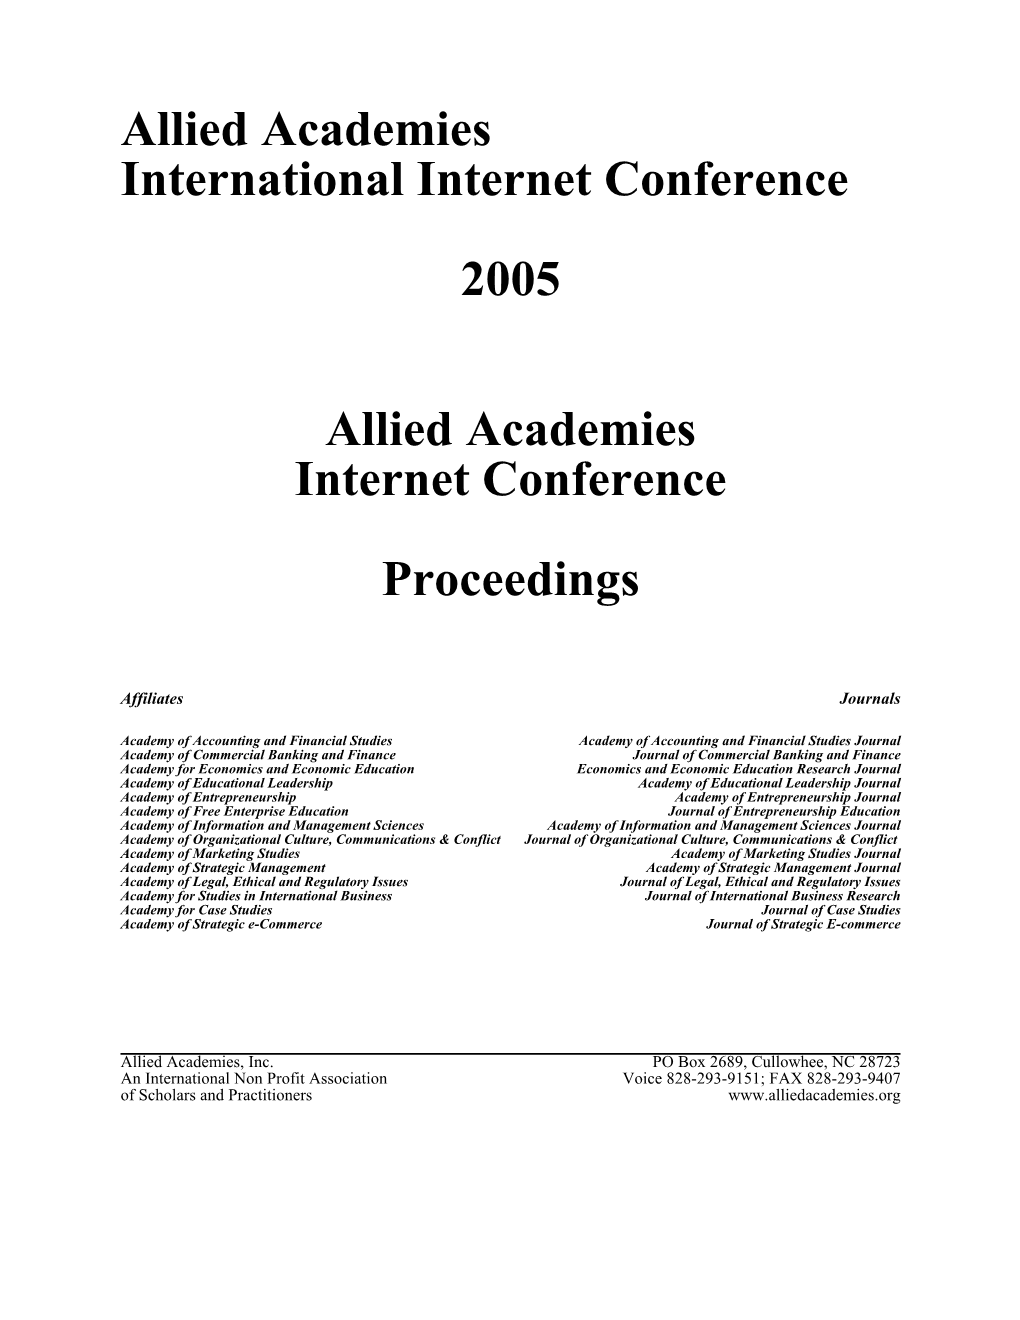 Internet Conference, Summer 2005